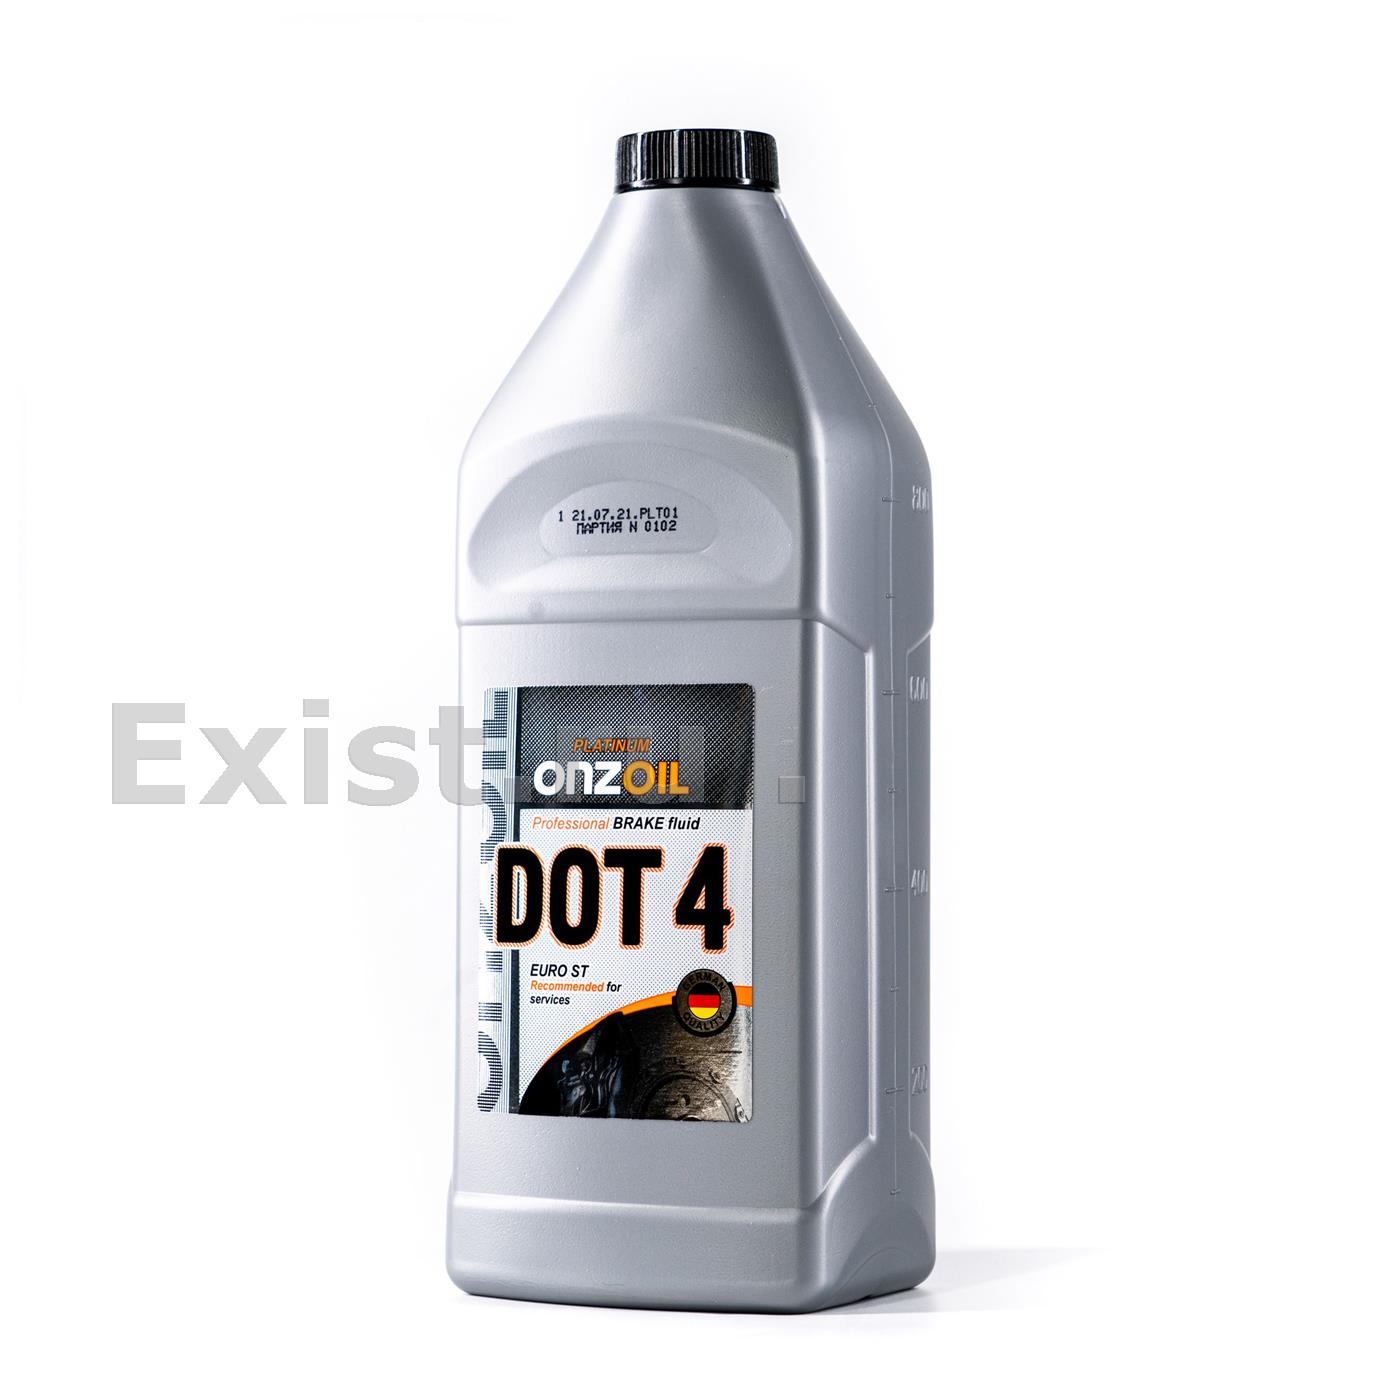 Жидкость тормозная DOT 4, Euro ST, 0.81л